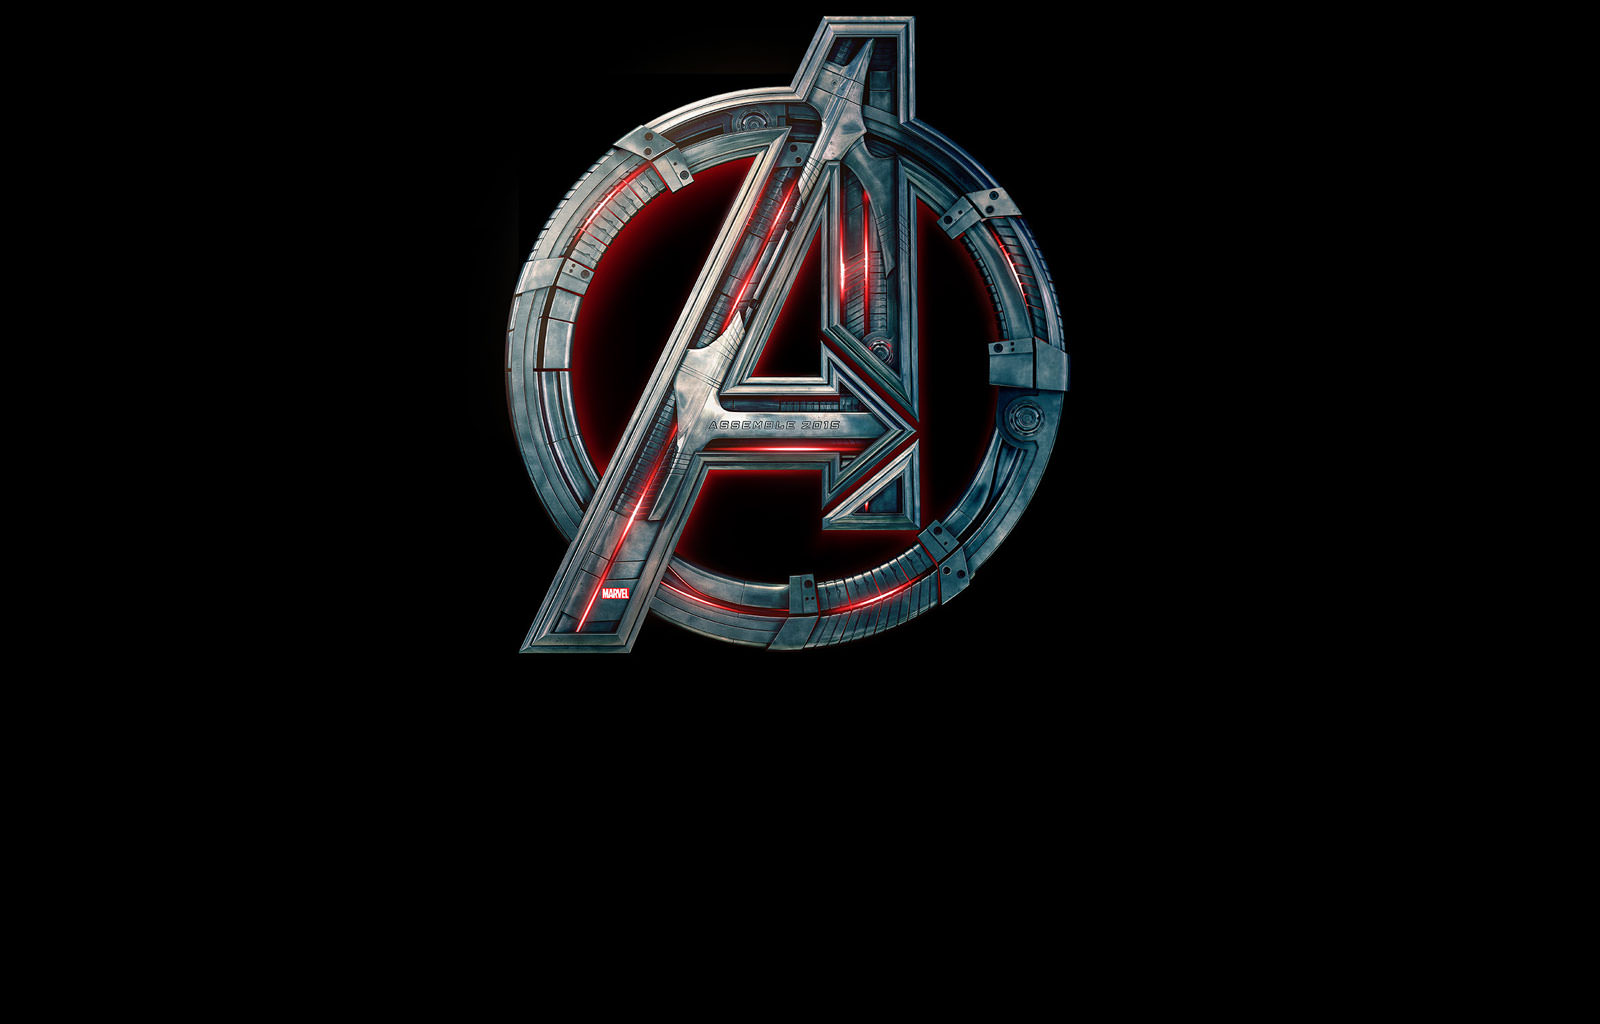 فیلم Avengers: Age of Ultron دومین افتتاحیه پرفروش تاریخ باکس آفیس را از آن خود کرد